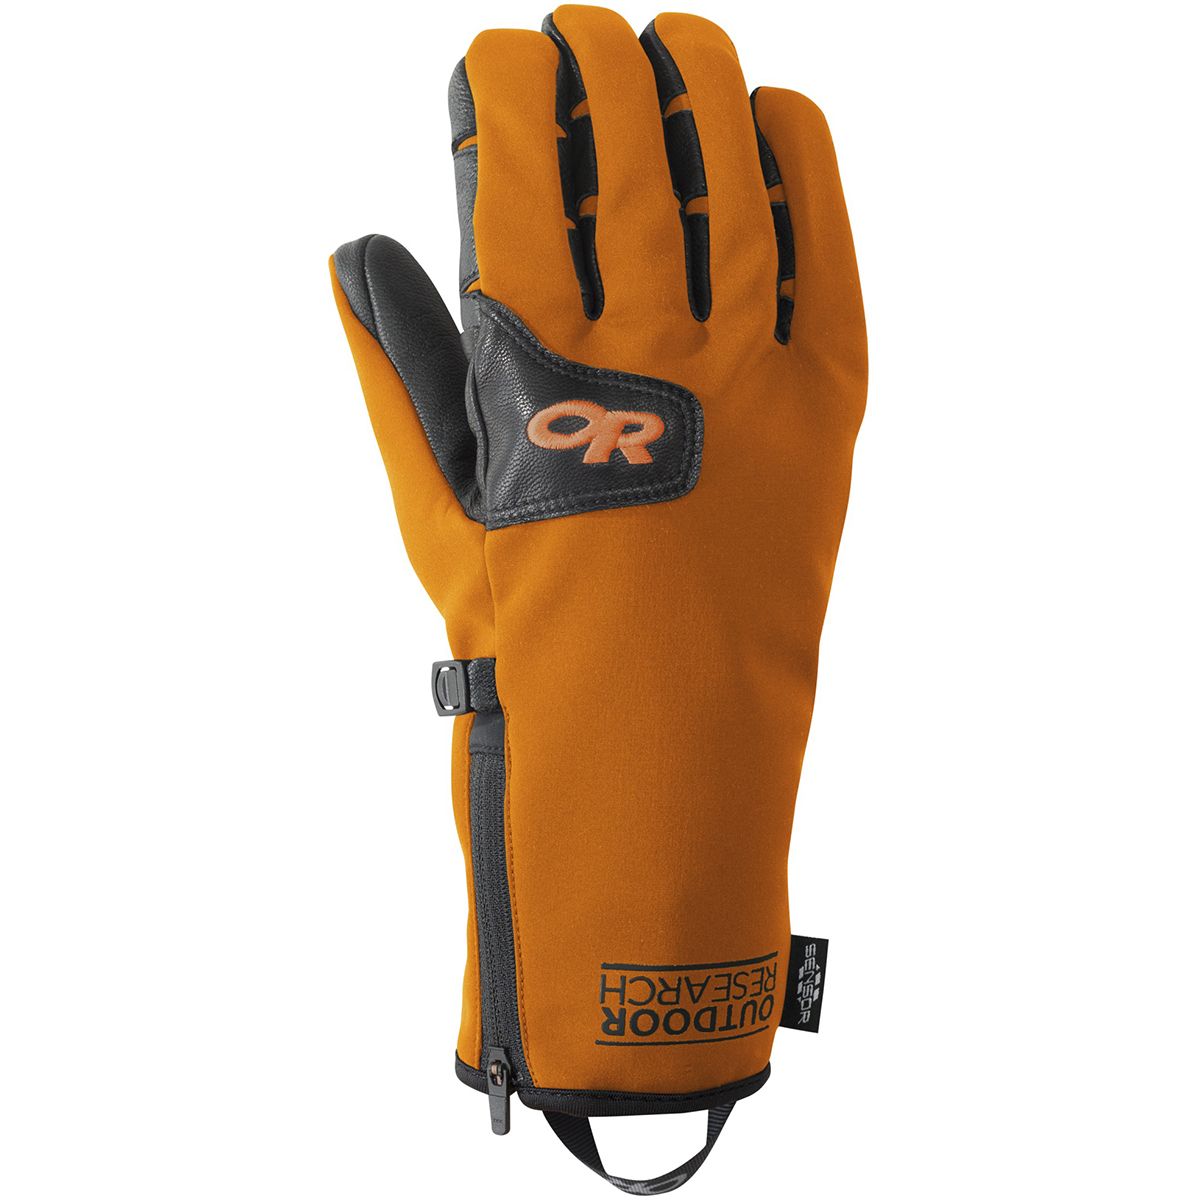 Outdoor Research StormTracker Sensor Glove - Men's Bengal M